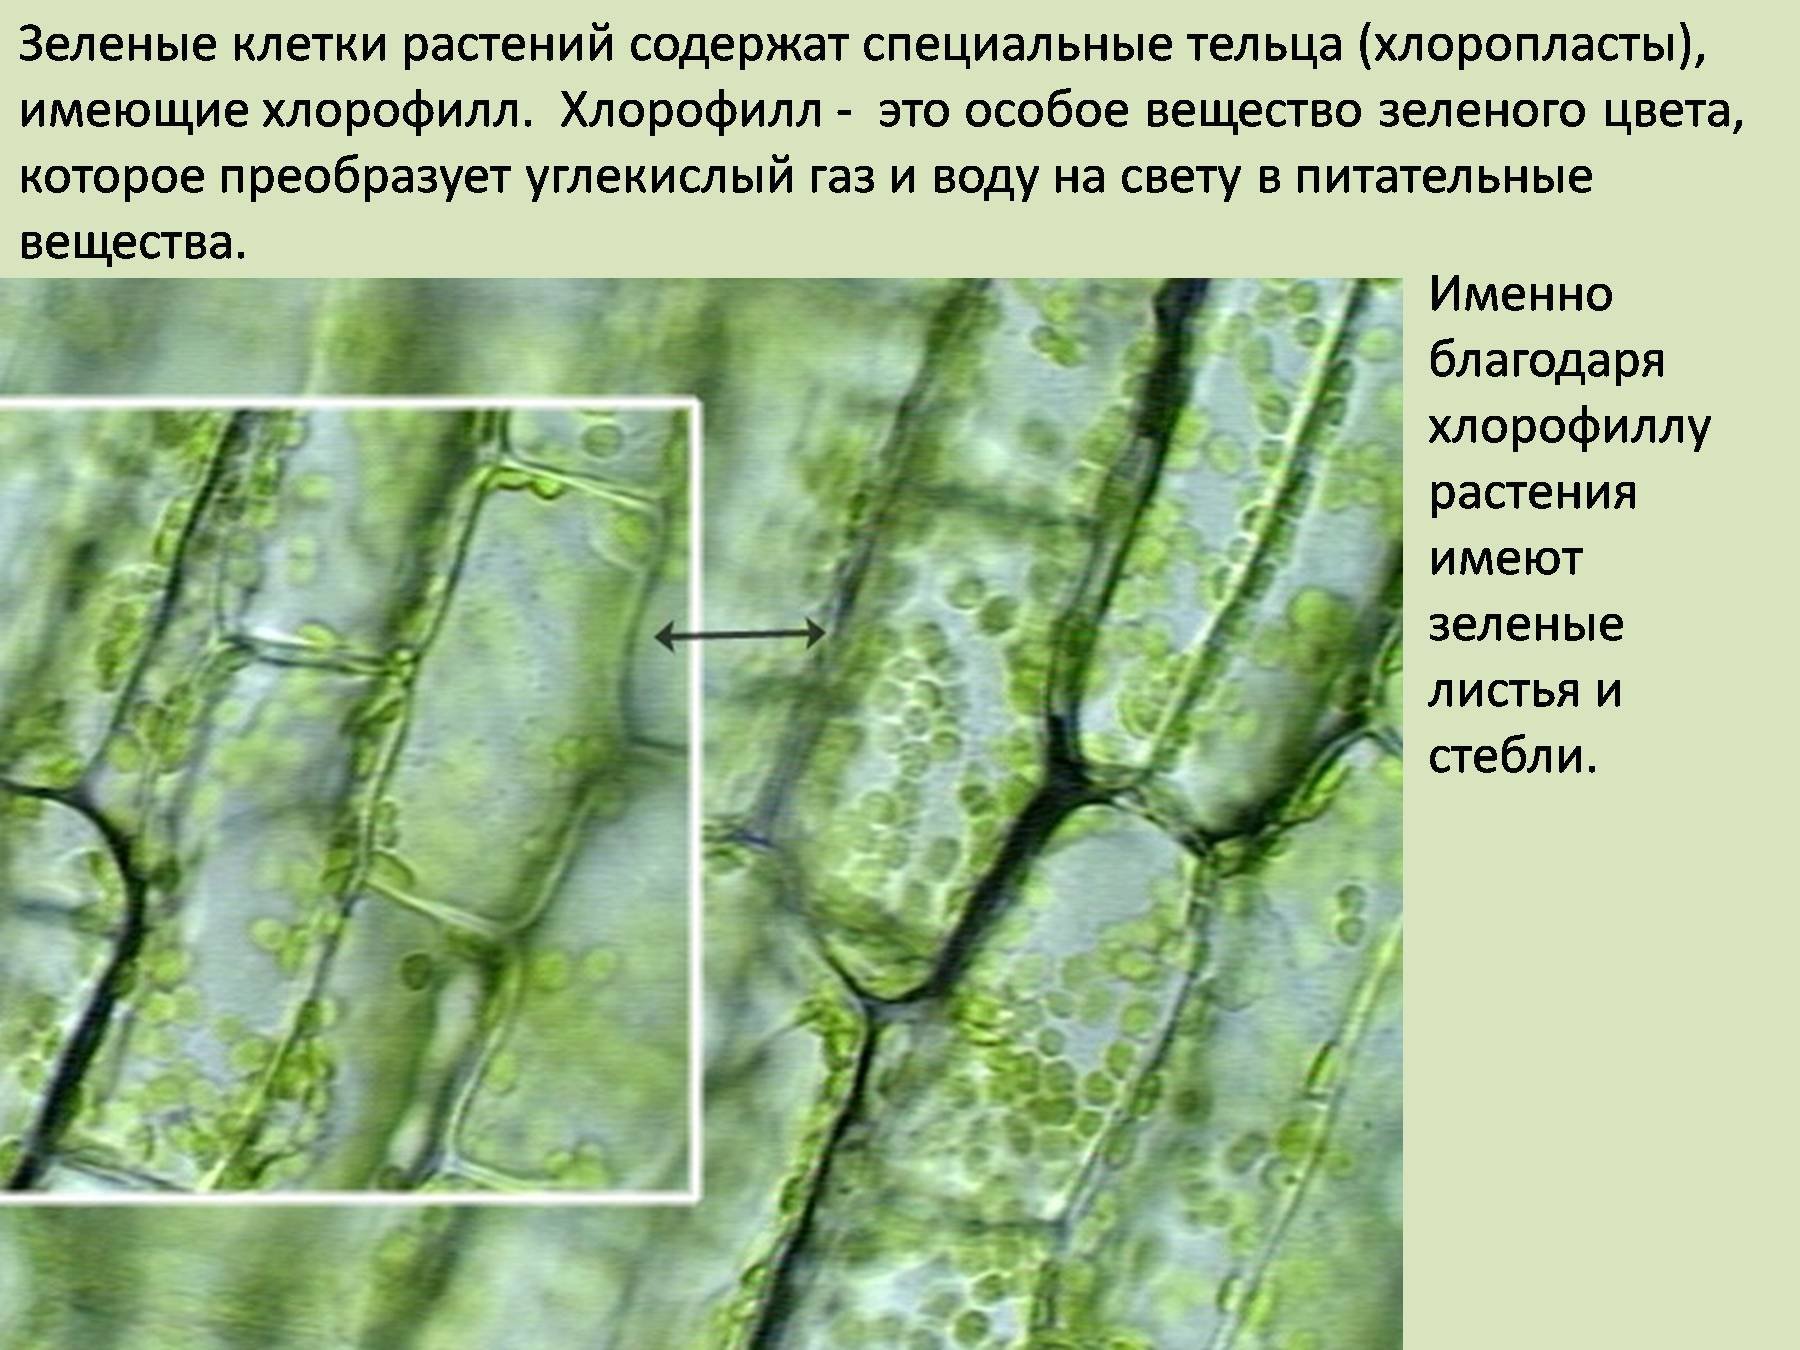 Хлорофилл в растительной клетке